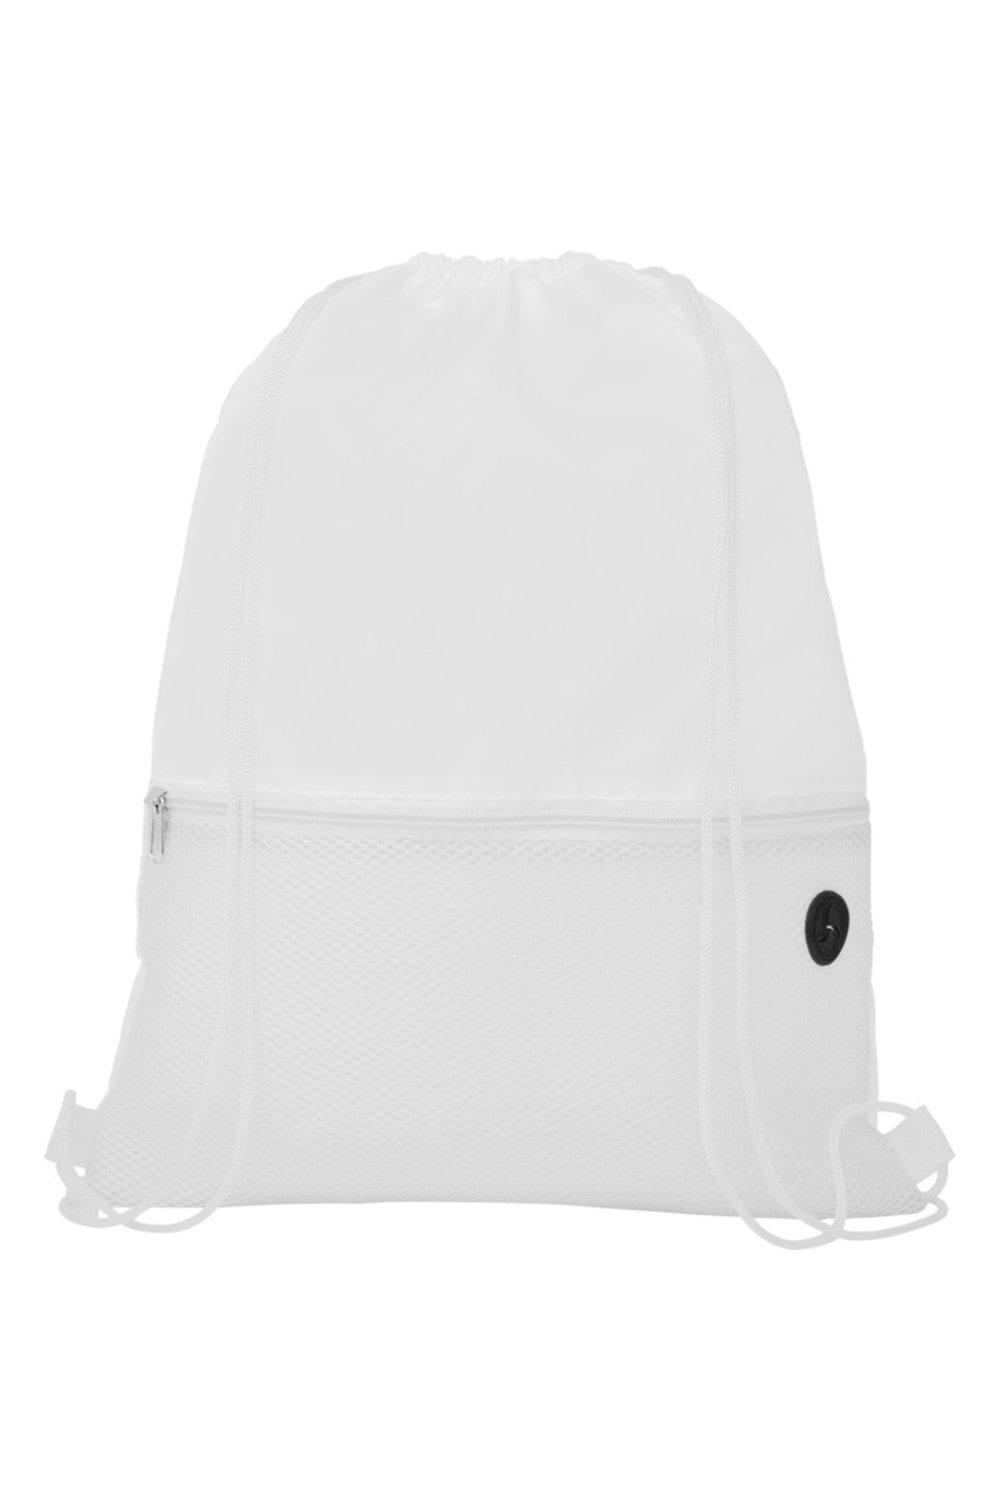 Сетчатая сумка Oriole на шнурке Bullet, белый сетчатая сумка для стиральной машины сетчатая сумка органайзер на шнурке вместительная сумка для гзного белья